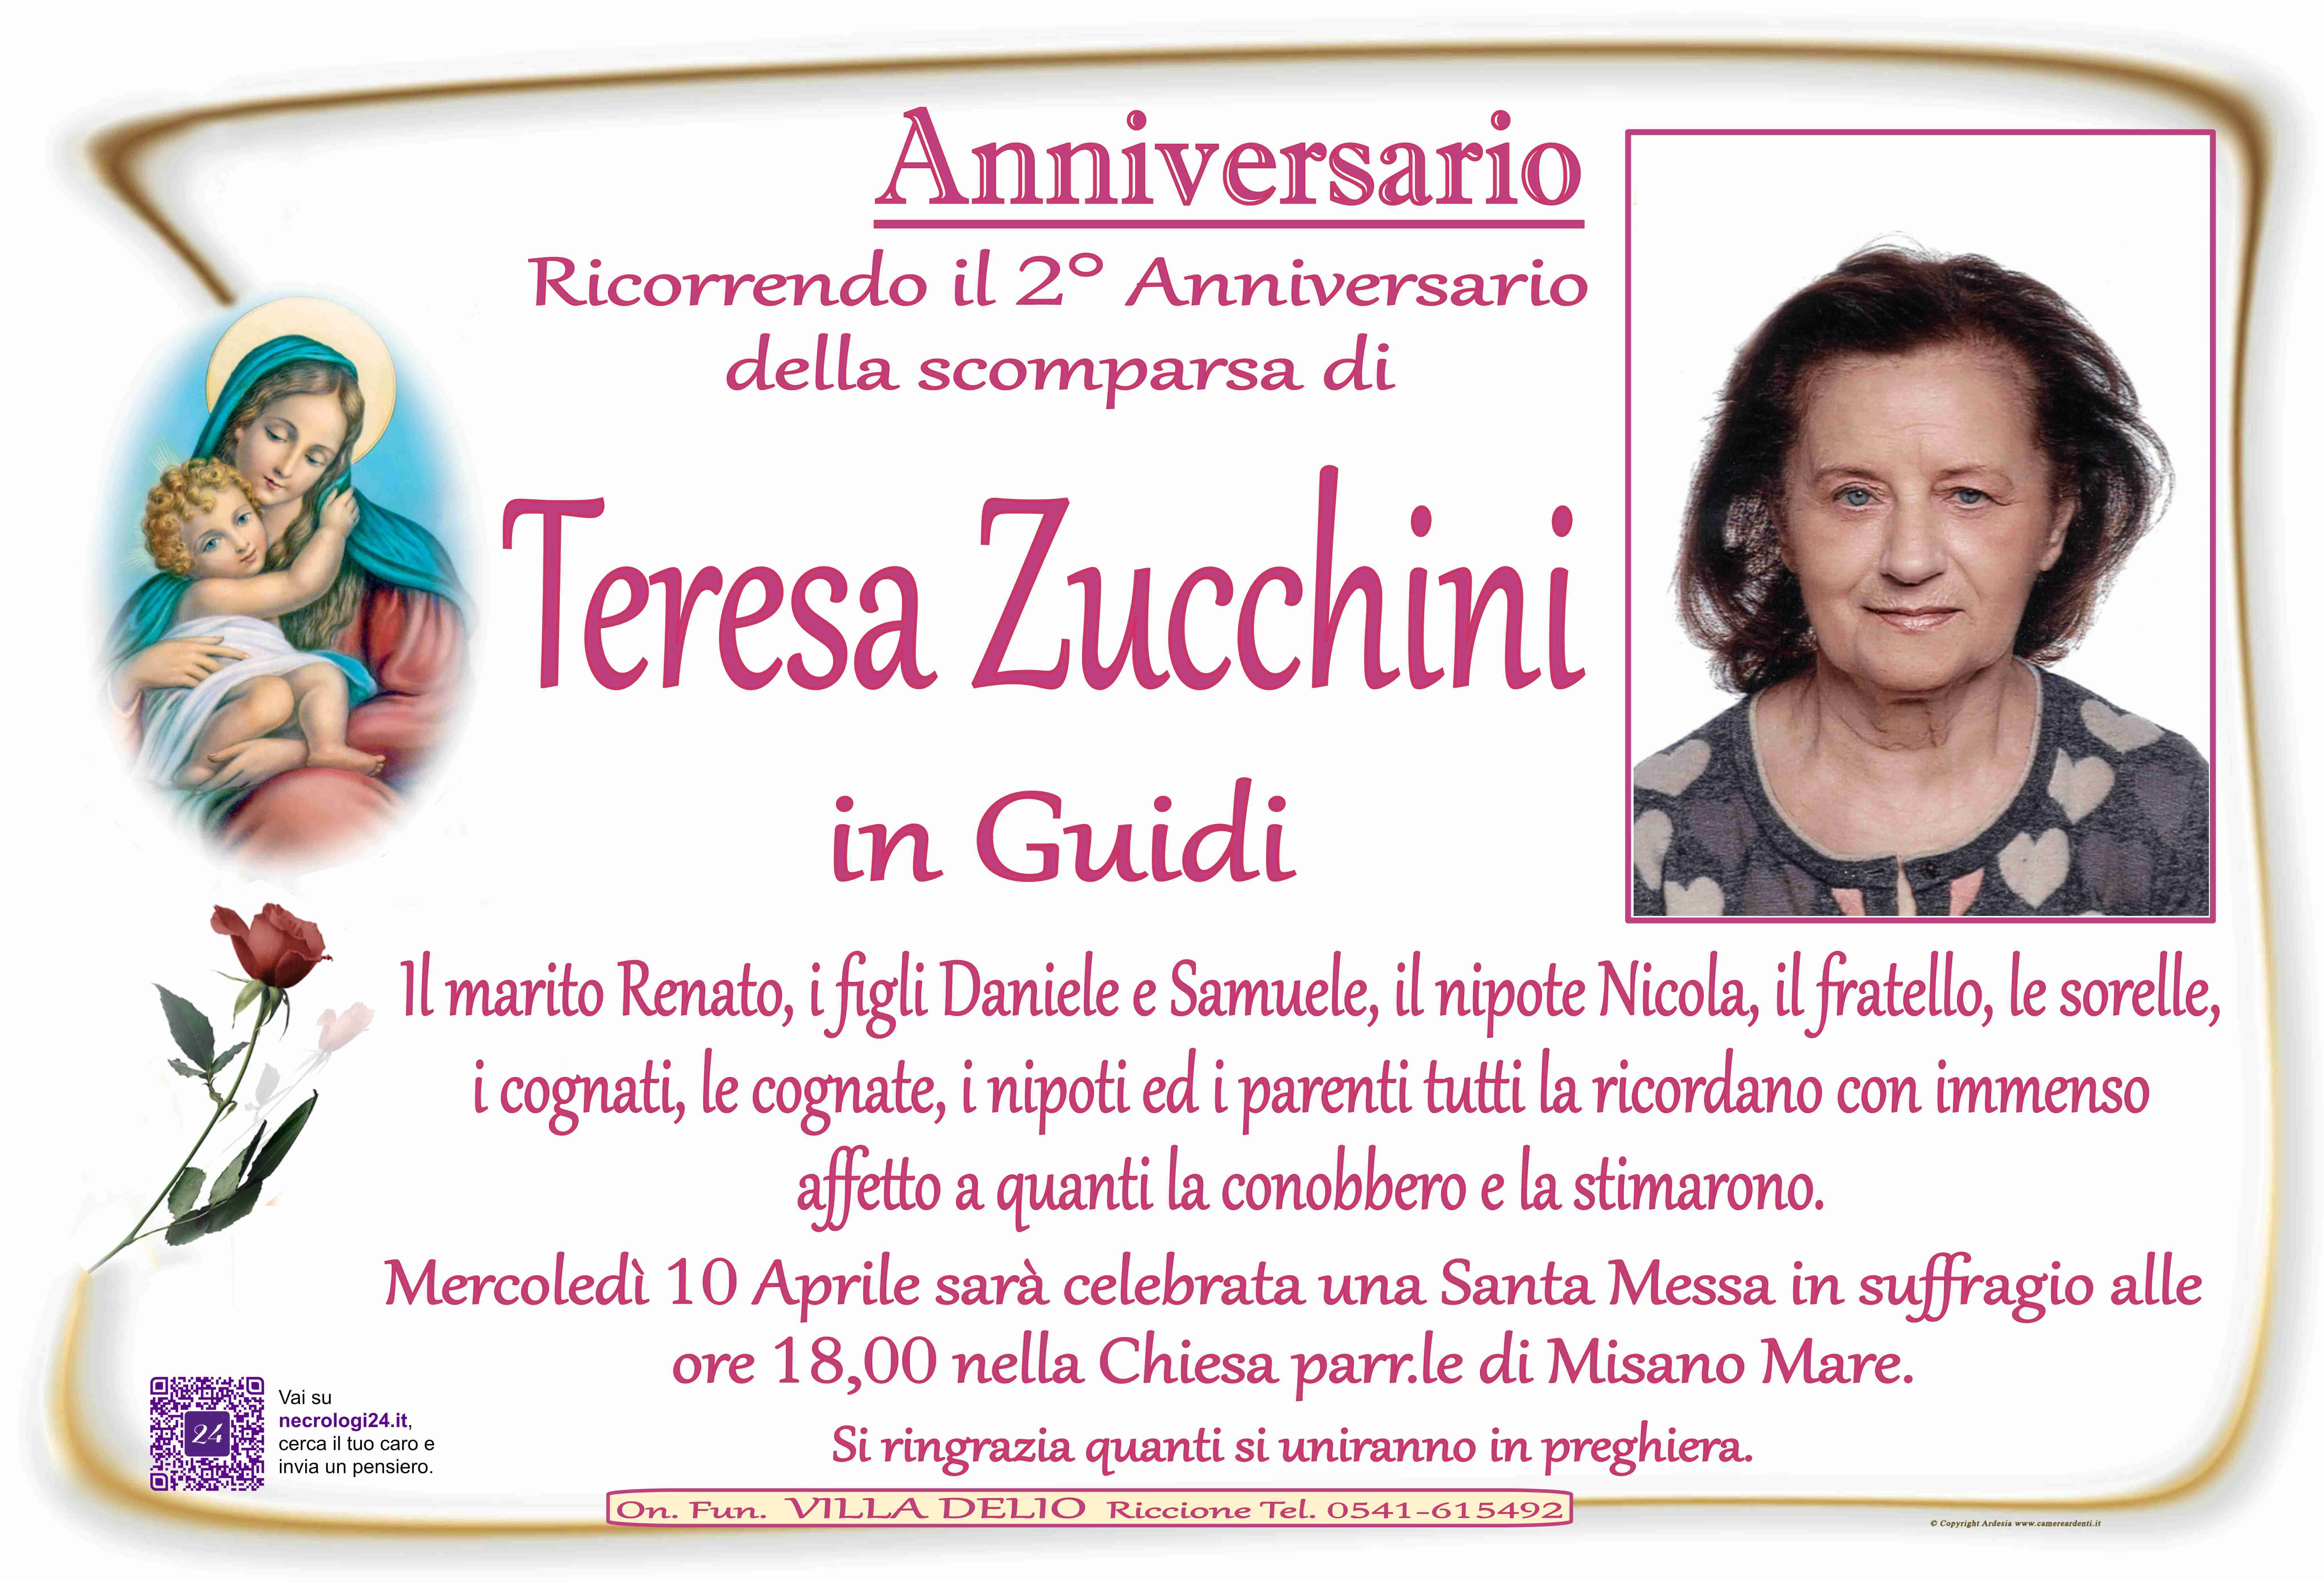 Teresa Zucchini in Guidi